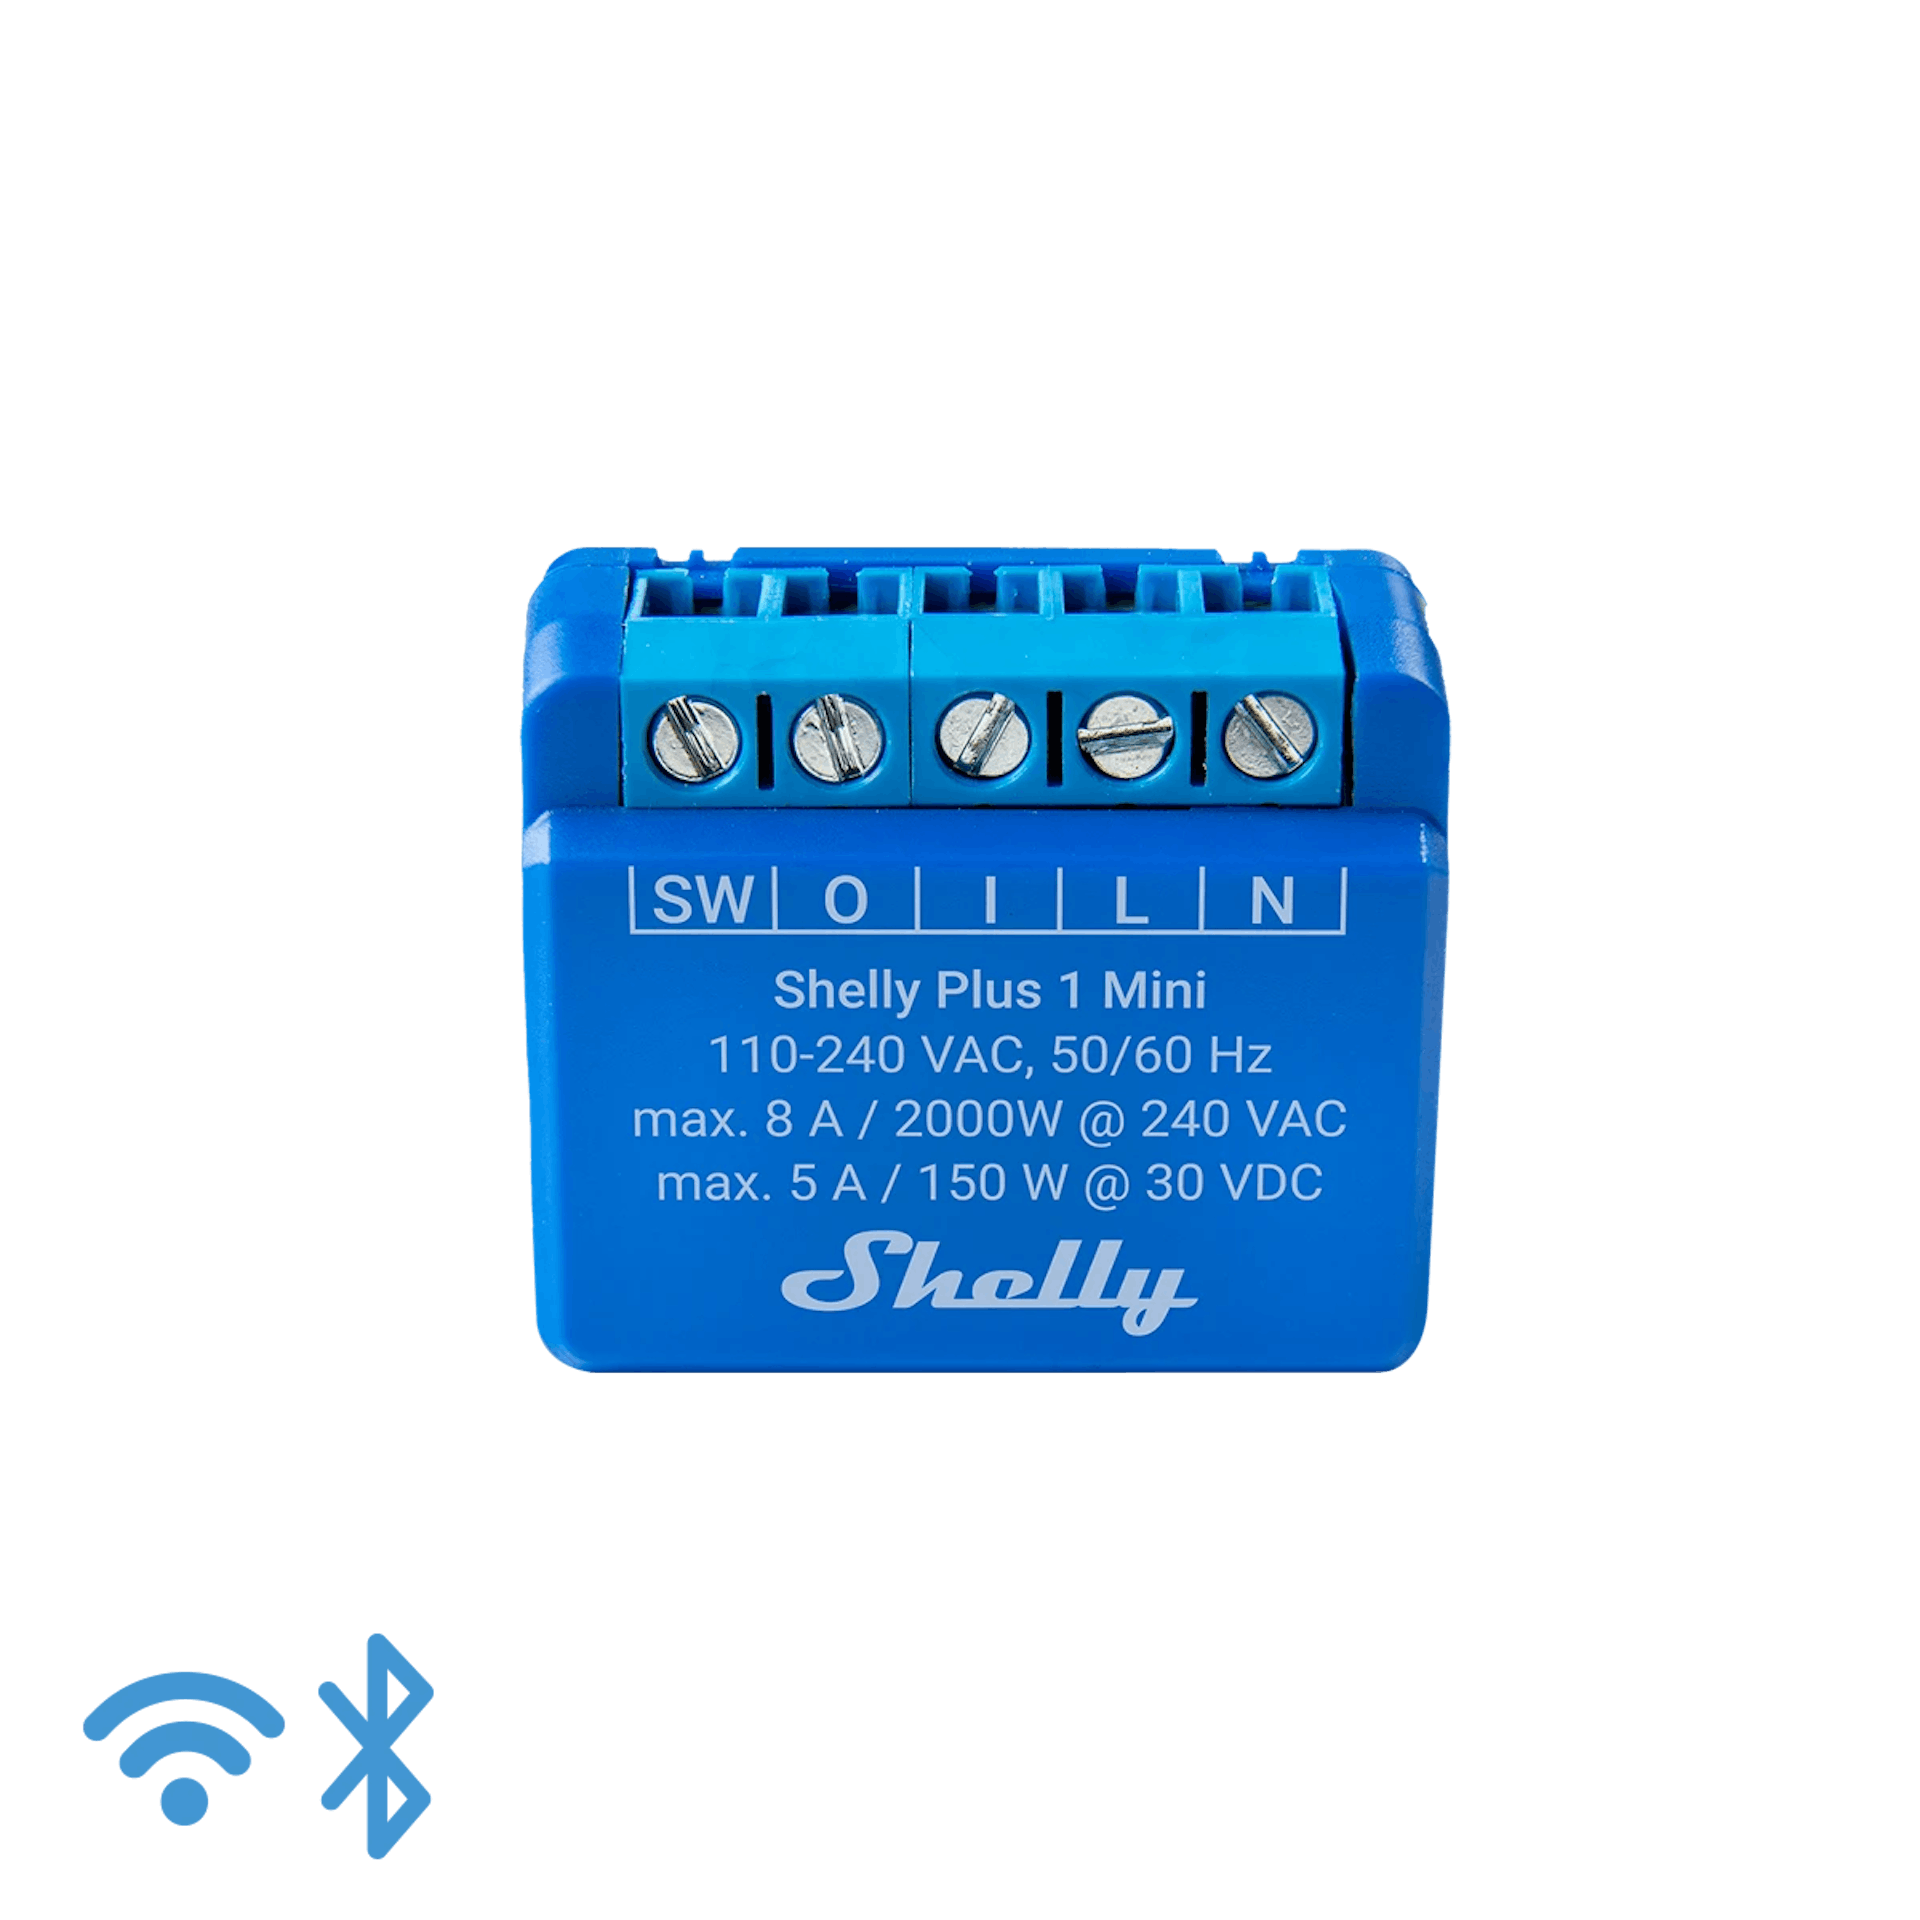 Shelly Plus 1 Mini (Gen 3)